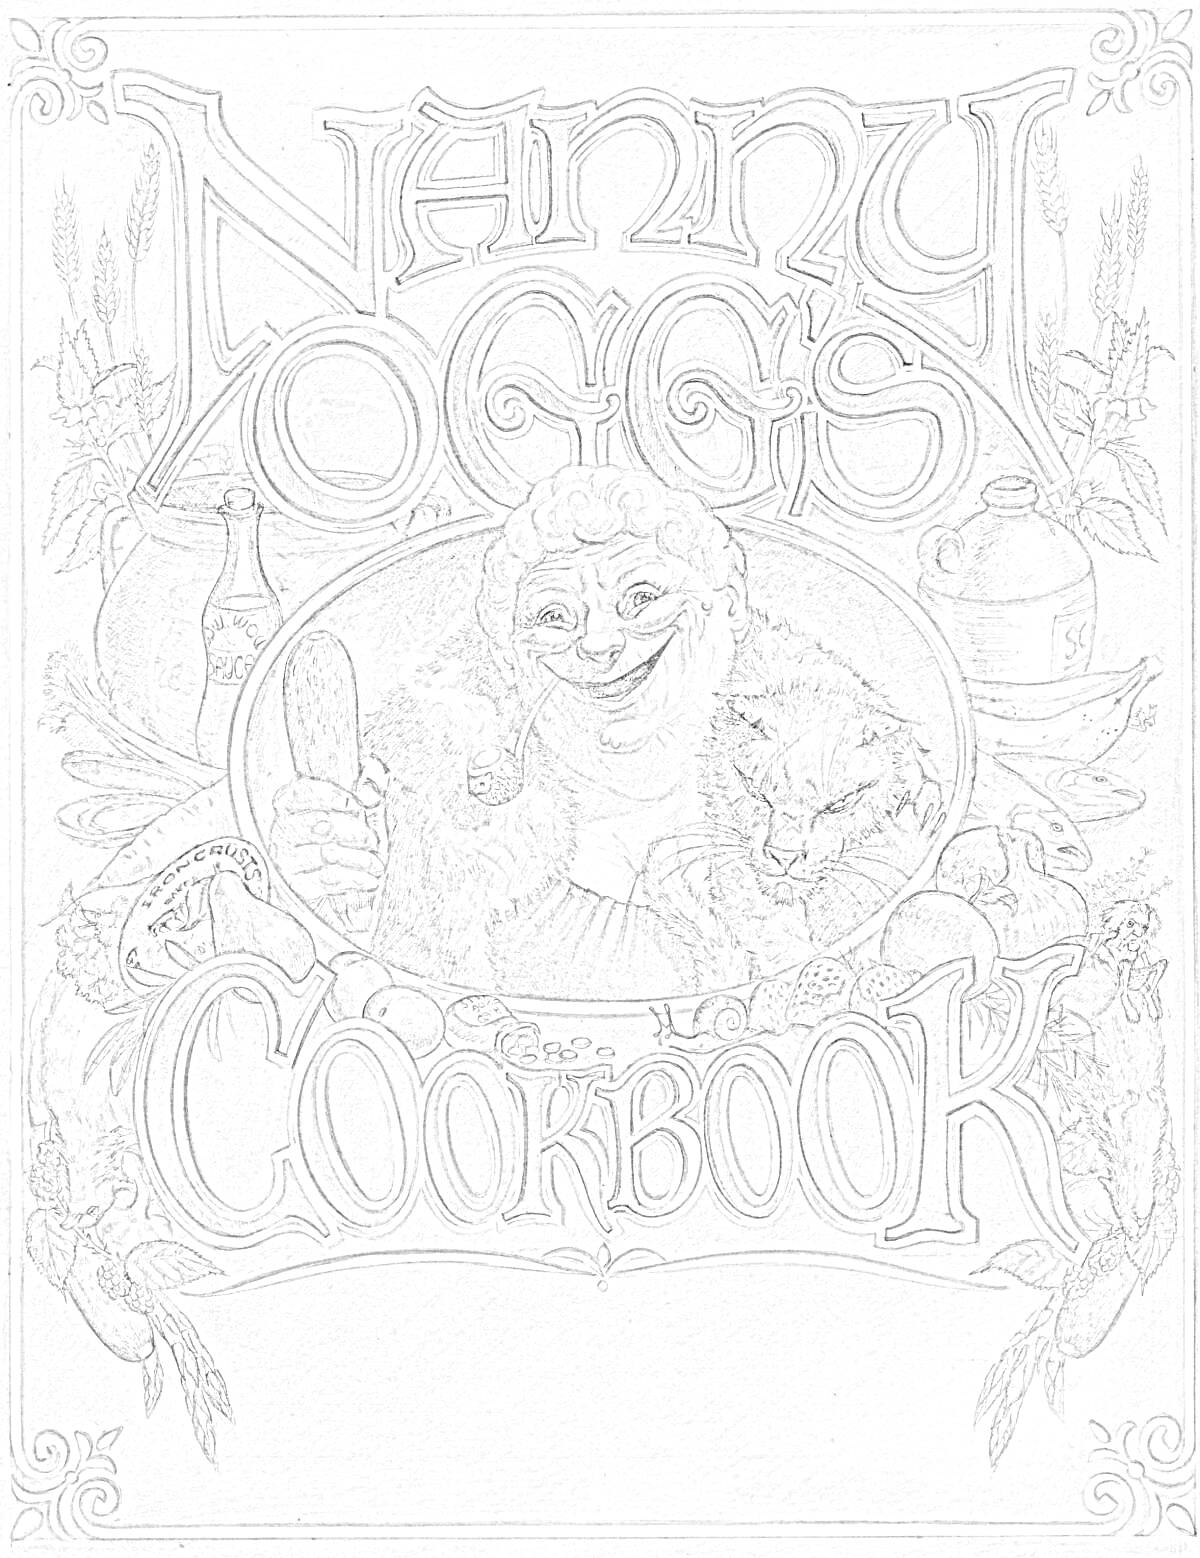 Раскраска Кулинарная книга с женщиной, двумя кошками, бутылью, чашкой и качаном кукурузы на обложке